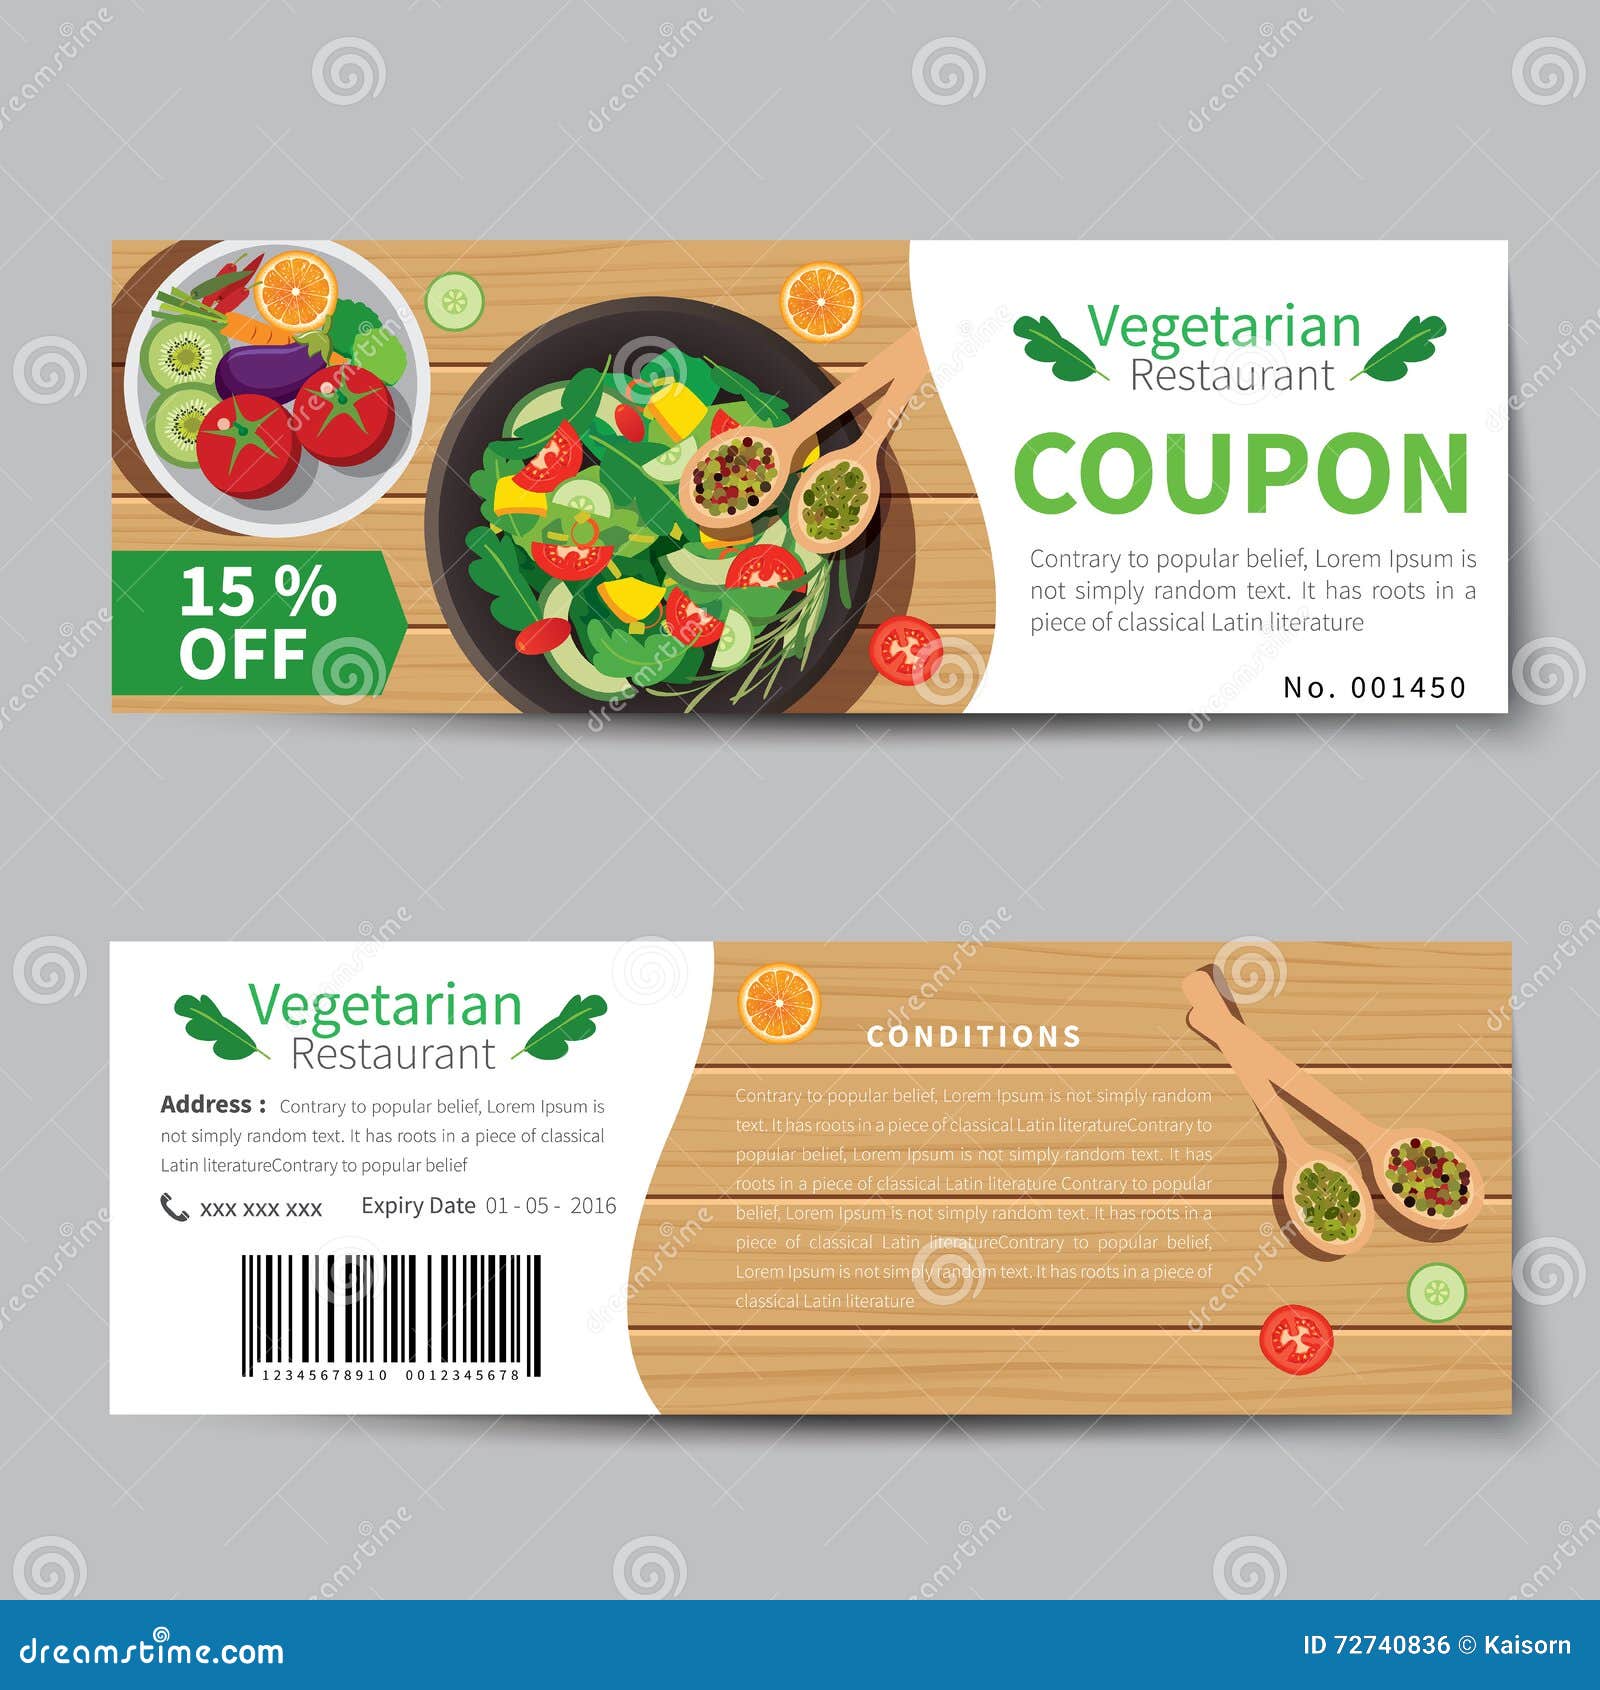 coupon design sample